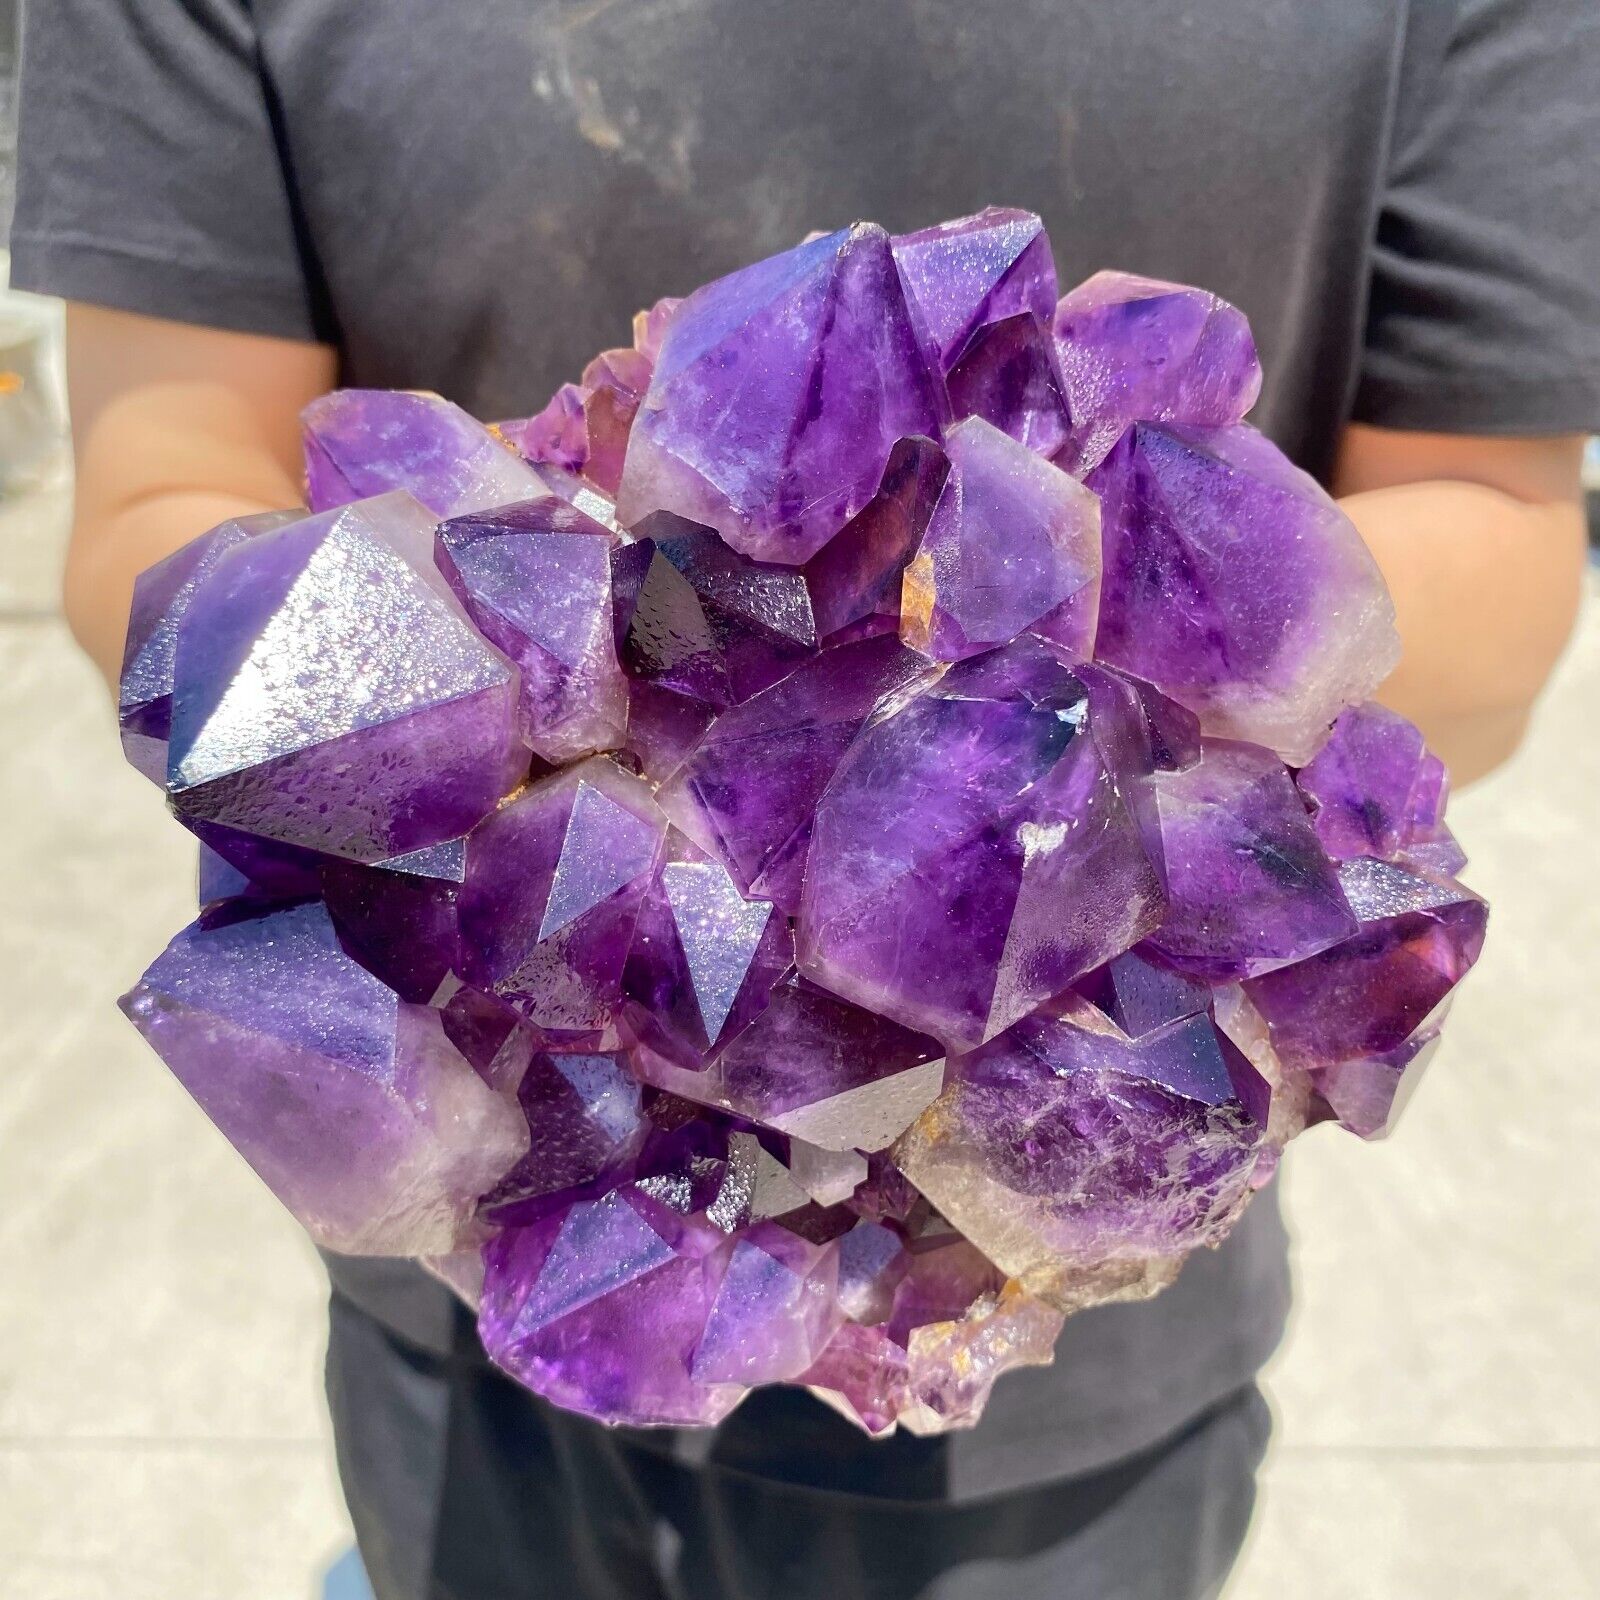 5lb Natural Amethyst geode quartz Crystal Cathedral cluster specimen Healing